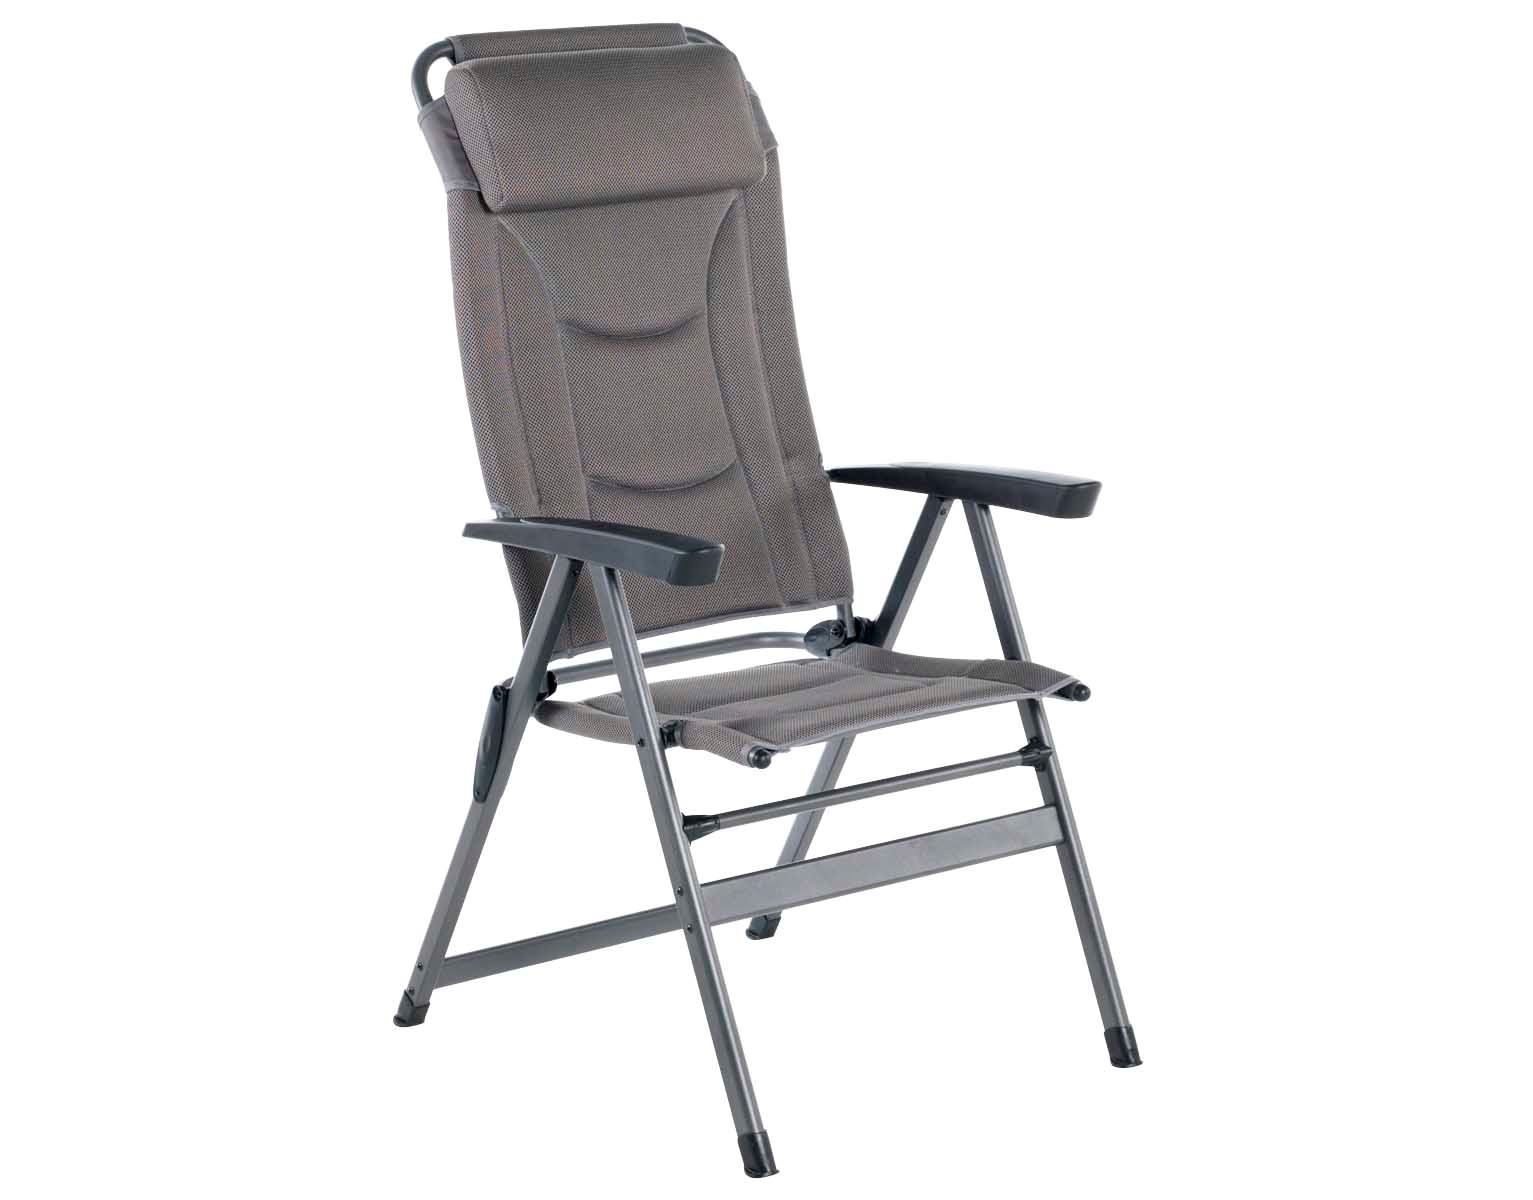 Wecamp Rocket stol - campingstol - Køb online